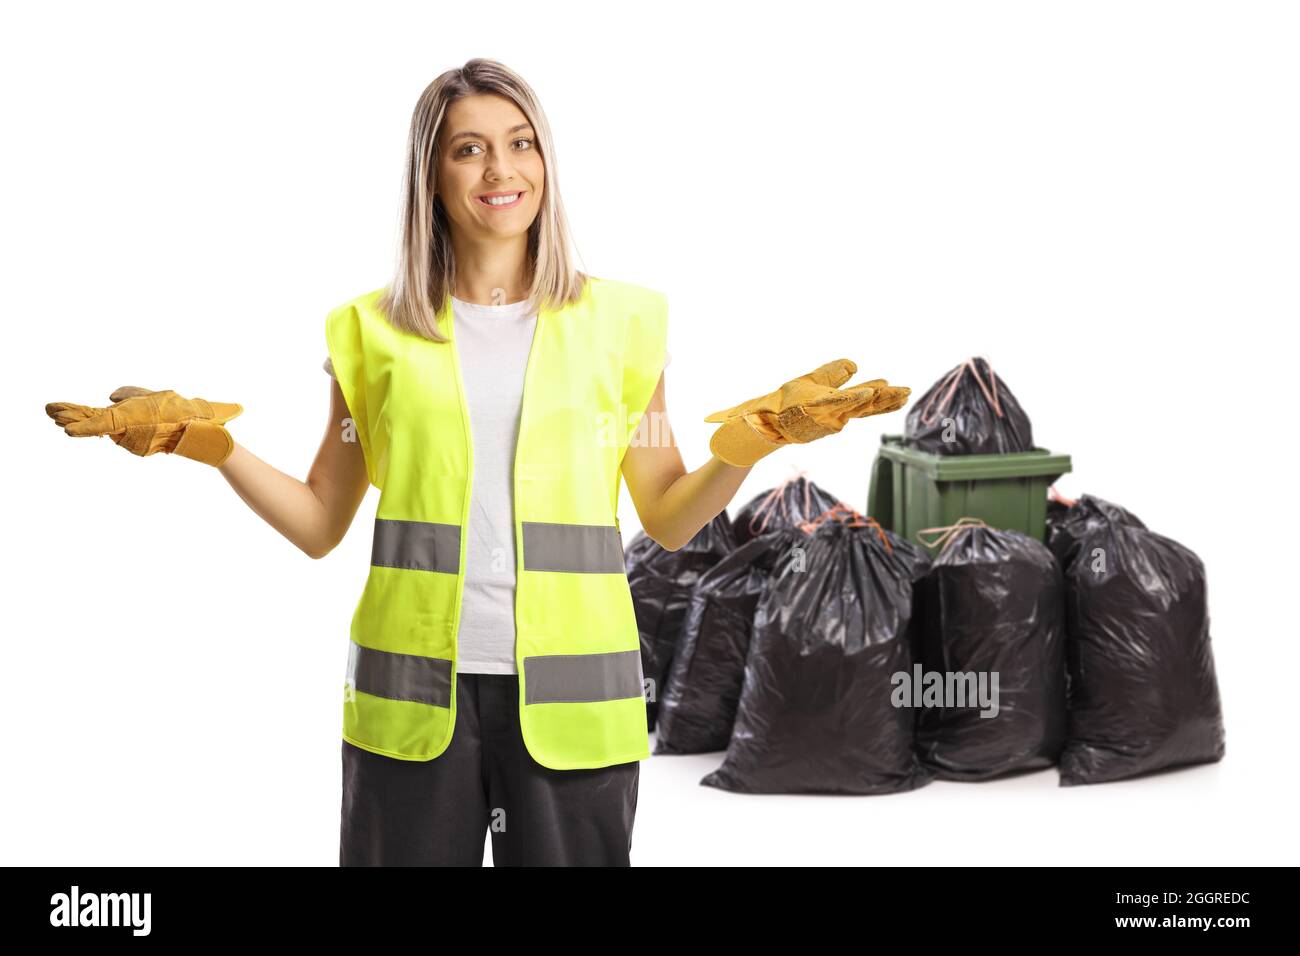 Collecteur de déchets femelle posé avec des bacs et des sacs isolés sur fond blanc Banque D'Images